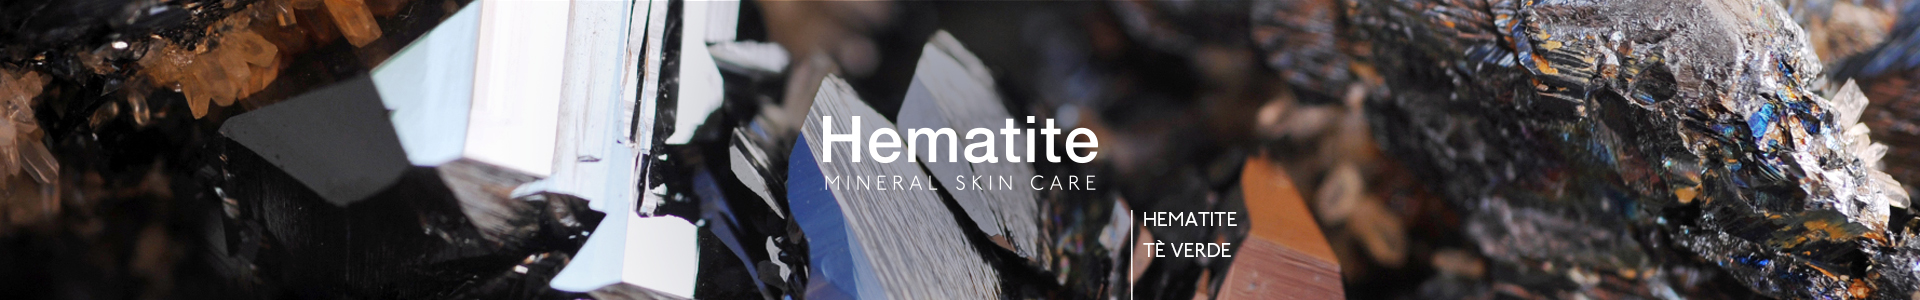 Hematite-1920x300-021018.jpg